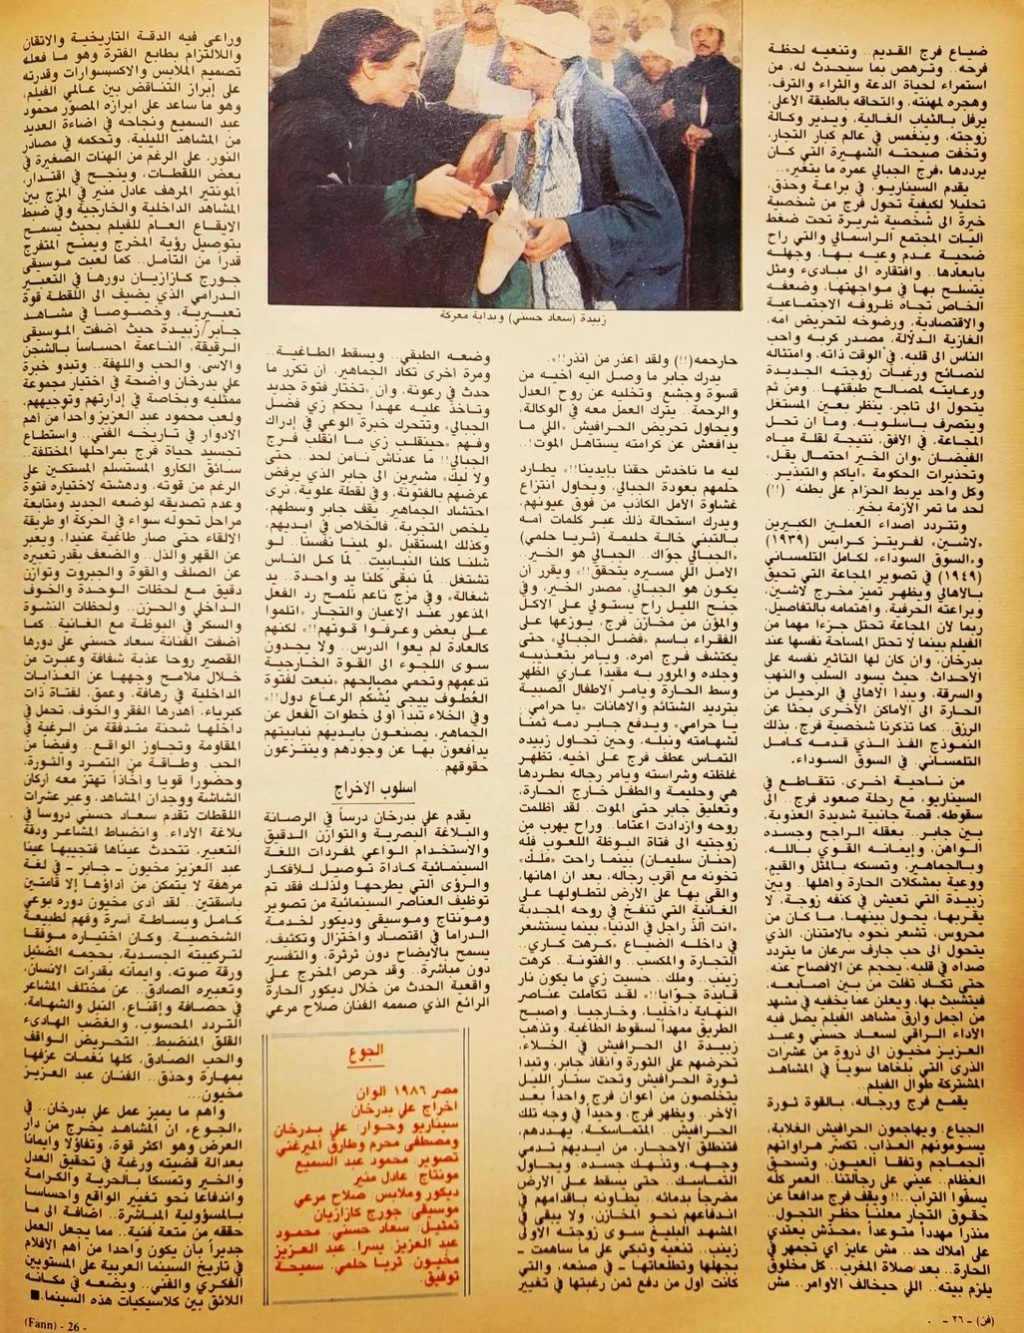 نقد صحفي : الجوع .. ملحمة انسانية عن العدل والحرية 1992 م 356